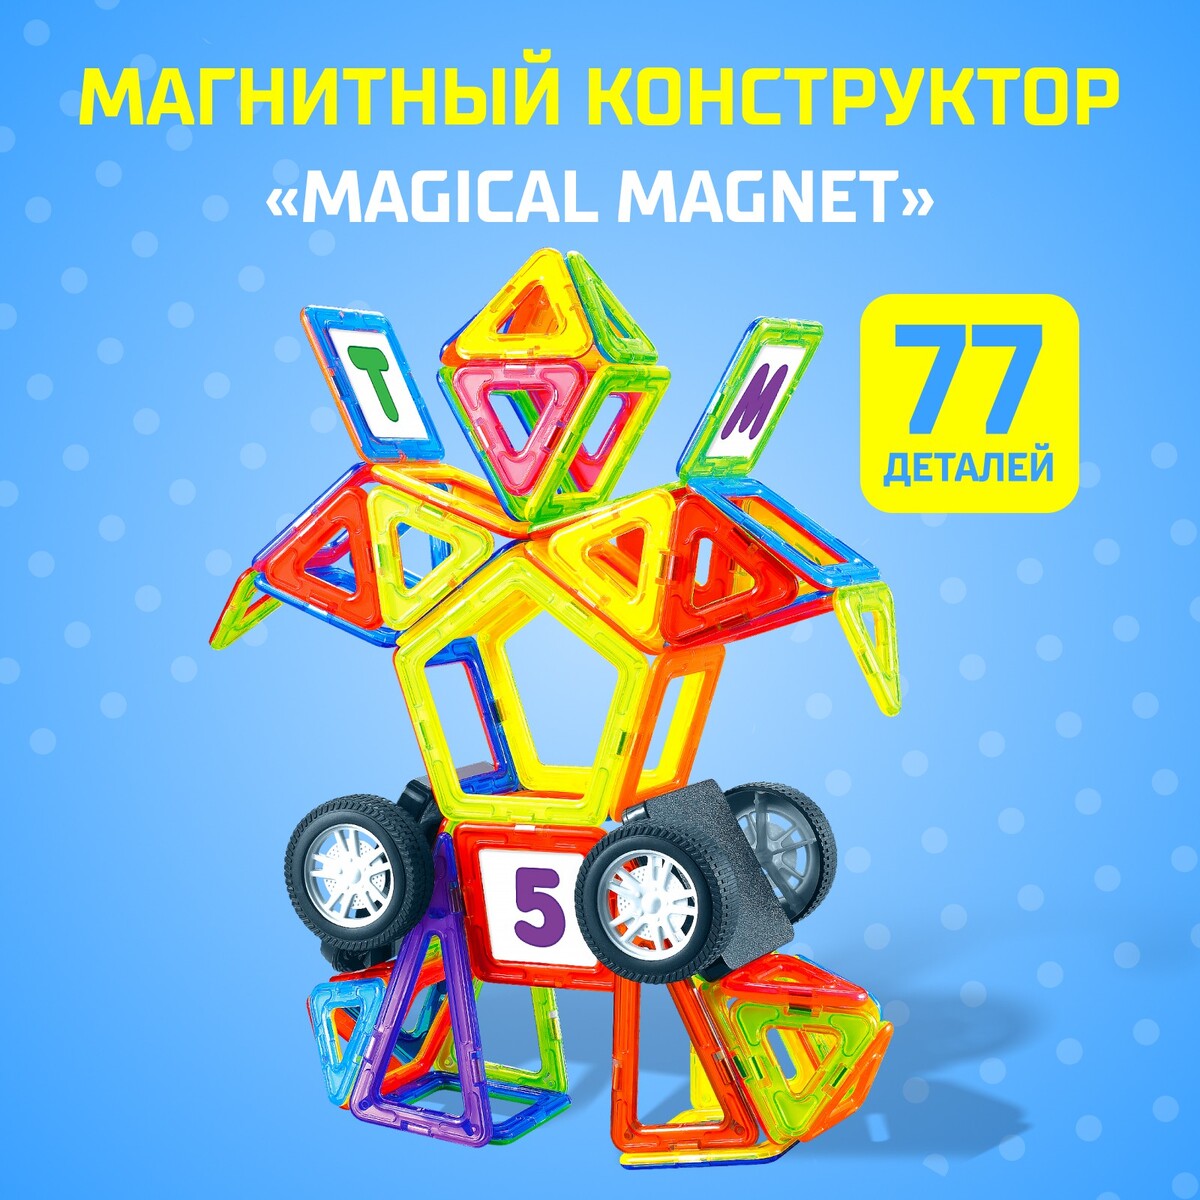 Магнитный конструктор magical magnet, 77 деталей, детали матовые набор пластиковых пуговиц на ножке d 15 мм 10 шт матовые белый серебряный